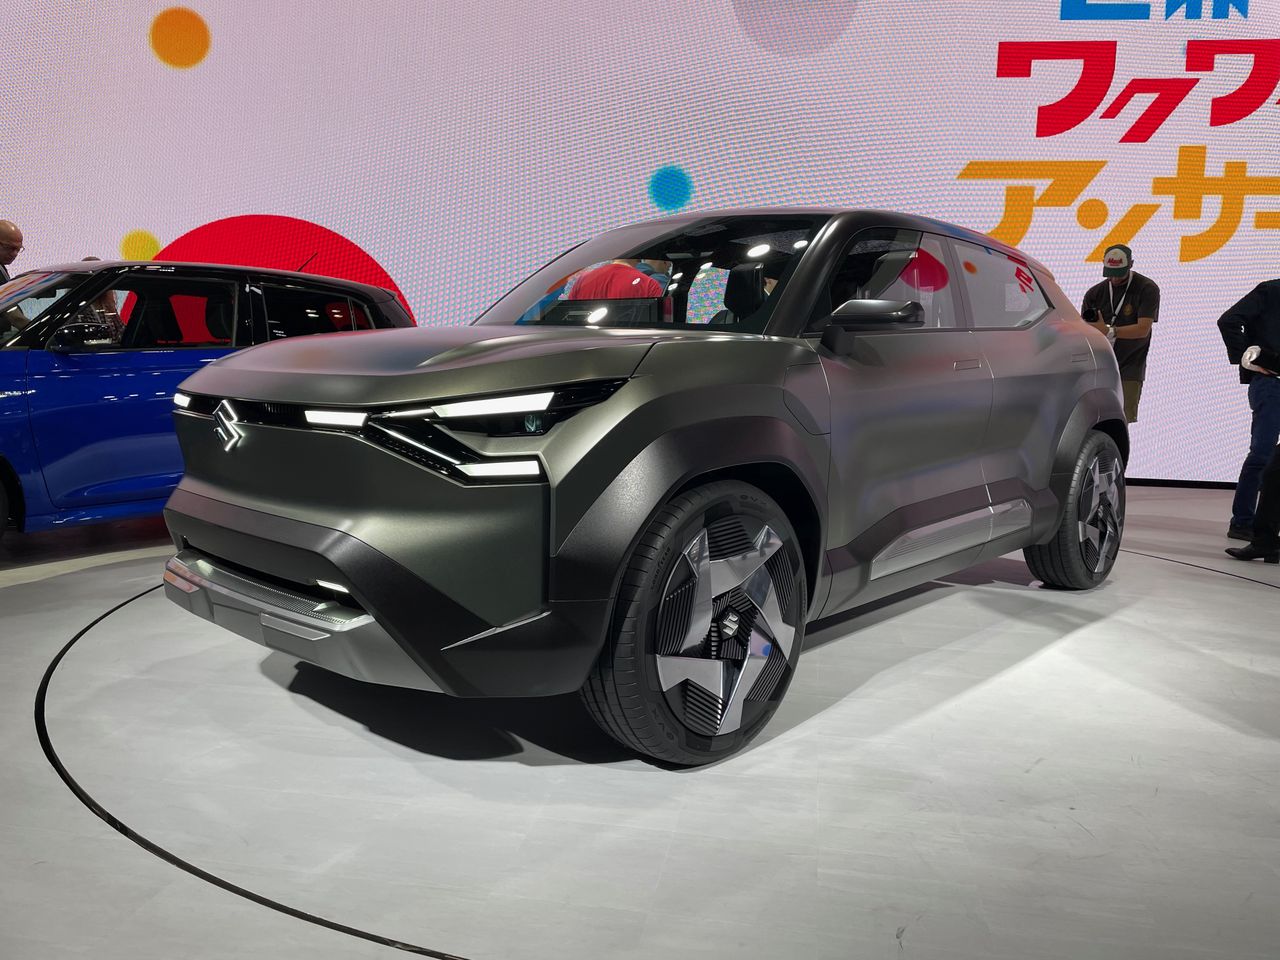 Suzuki eVX będzie pierwszym elektrykiem marki. Jest coraz bliższy produkcji